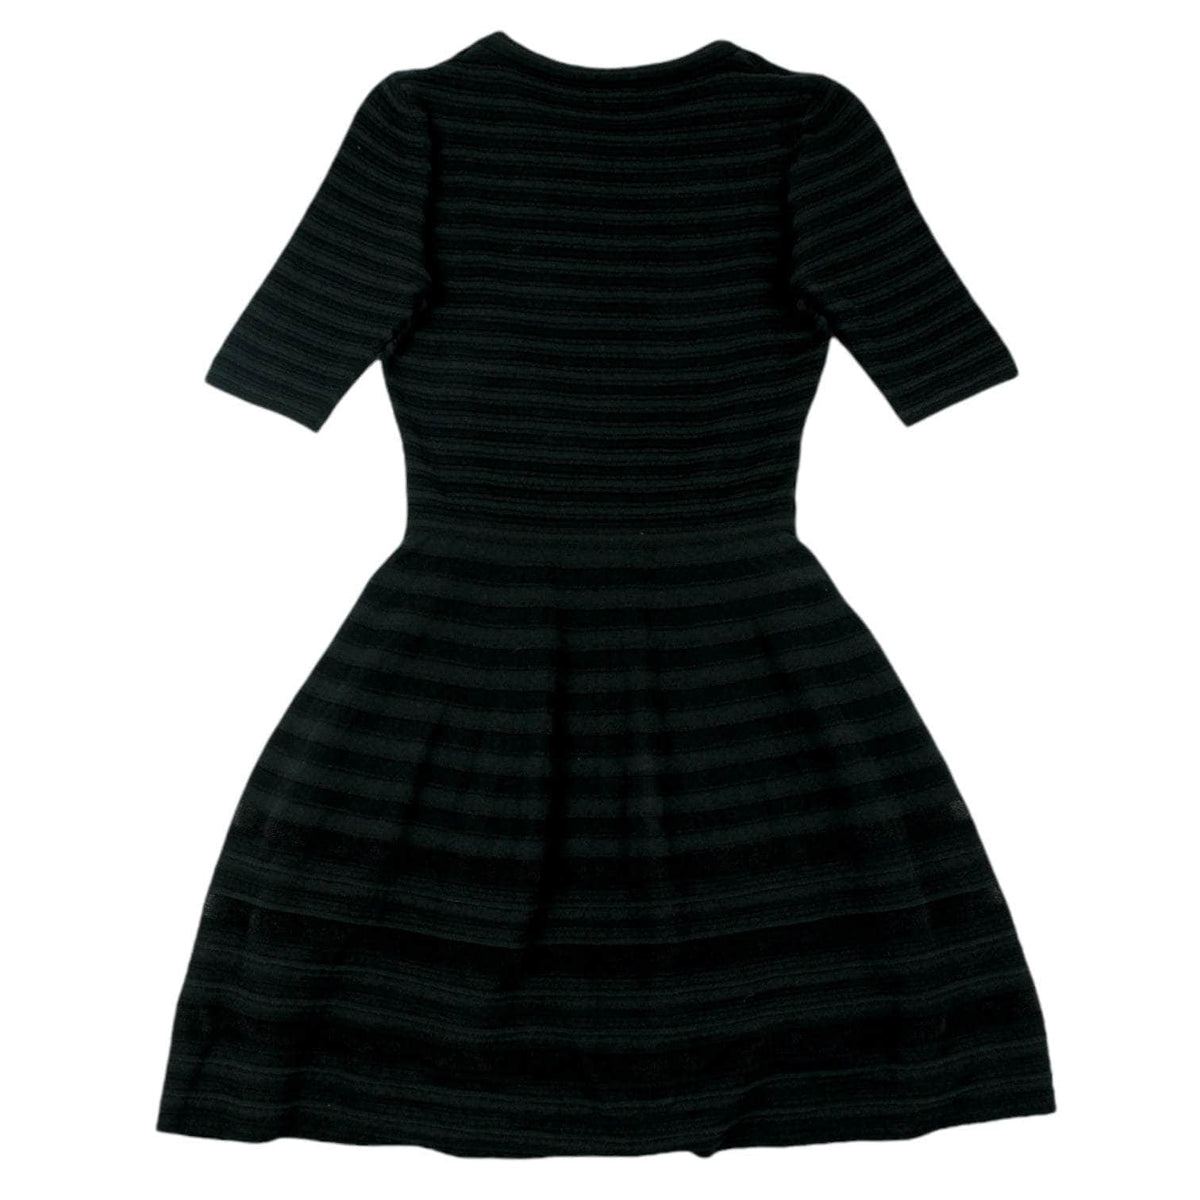 Missoni Black Ribbed Mini Dress